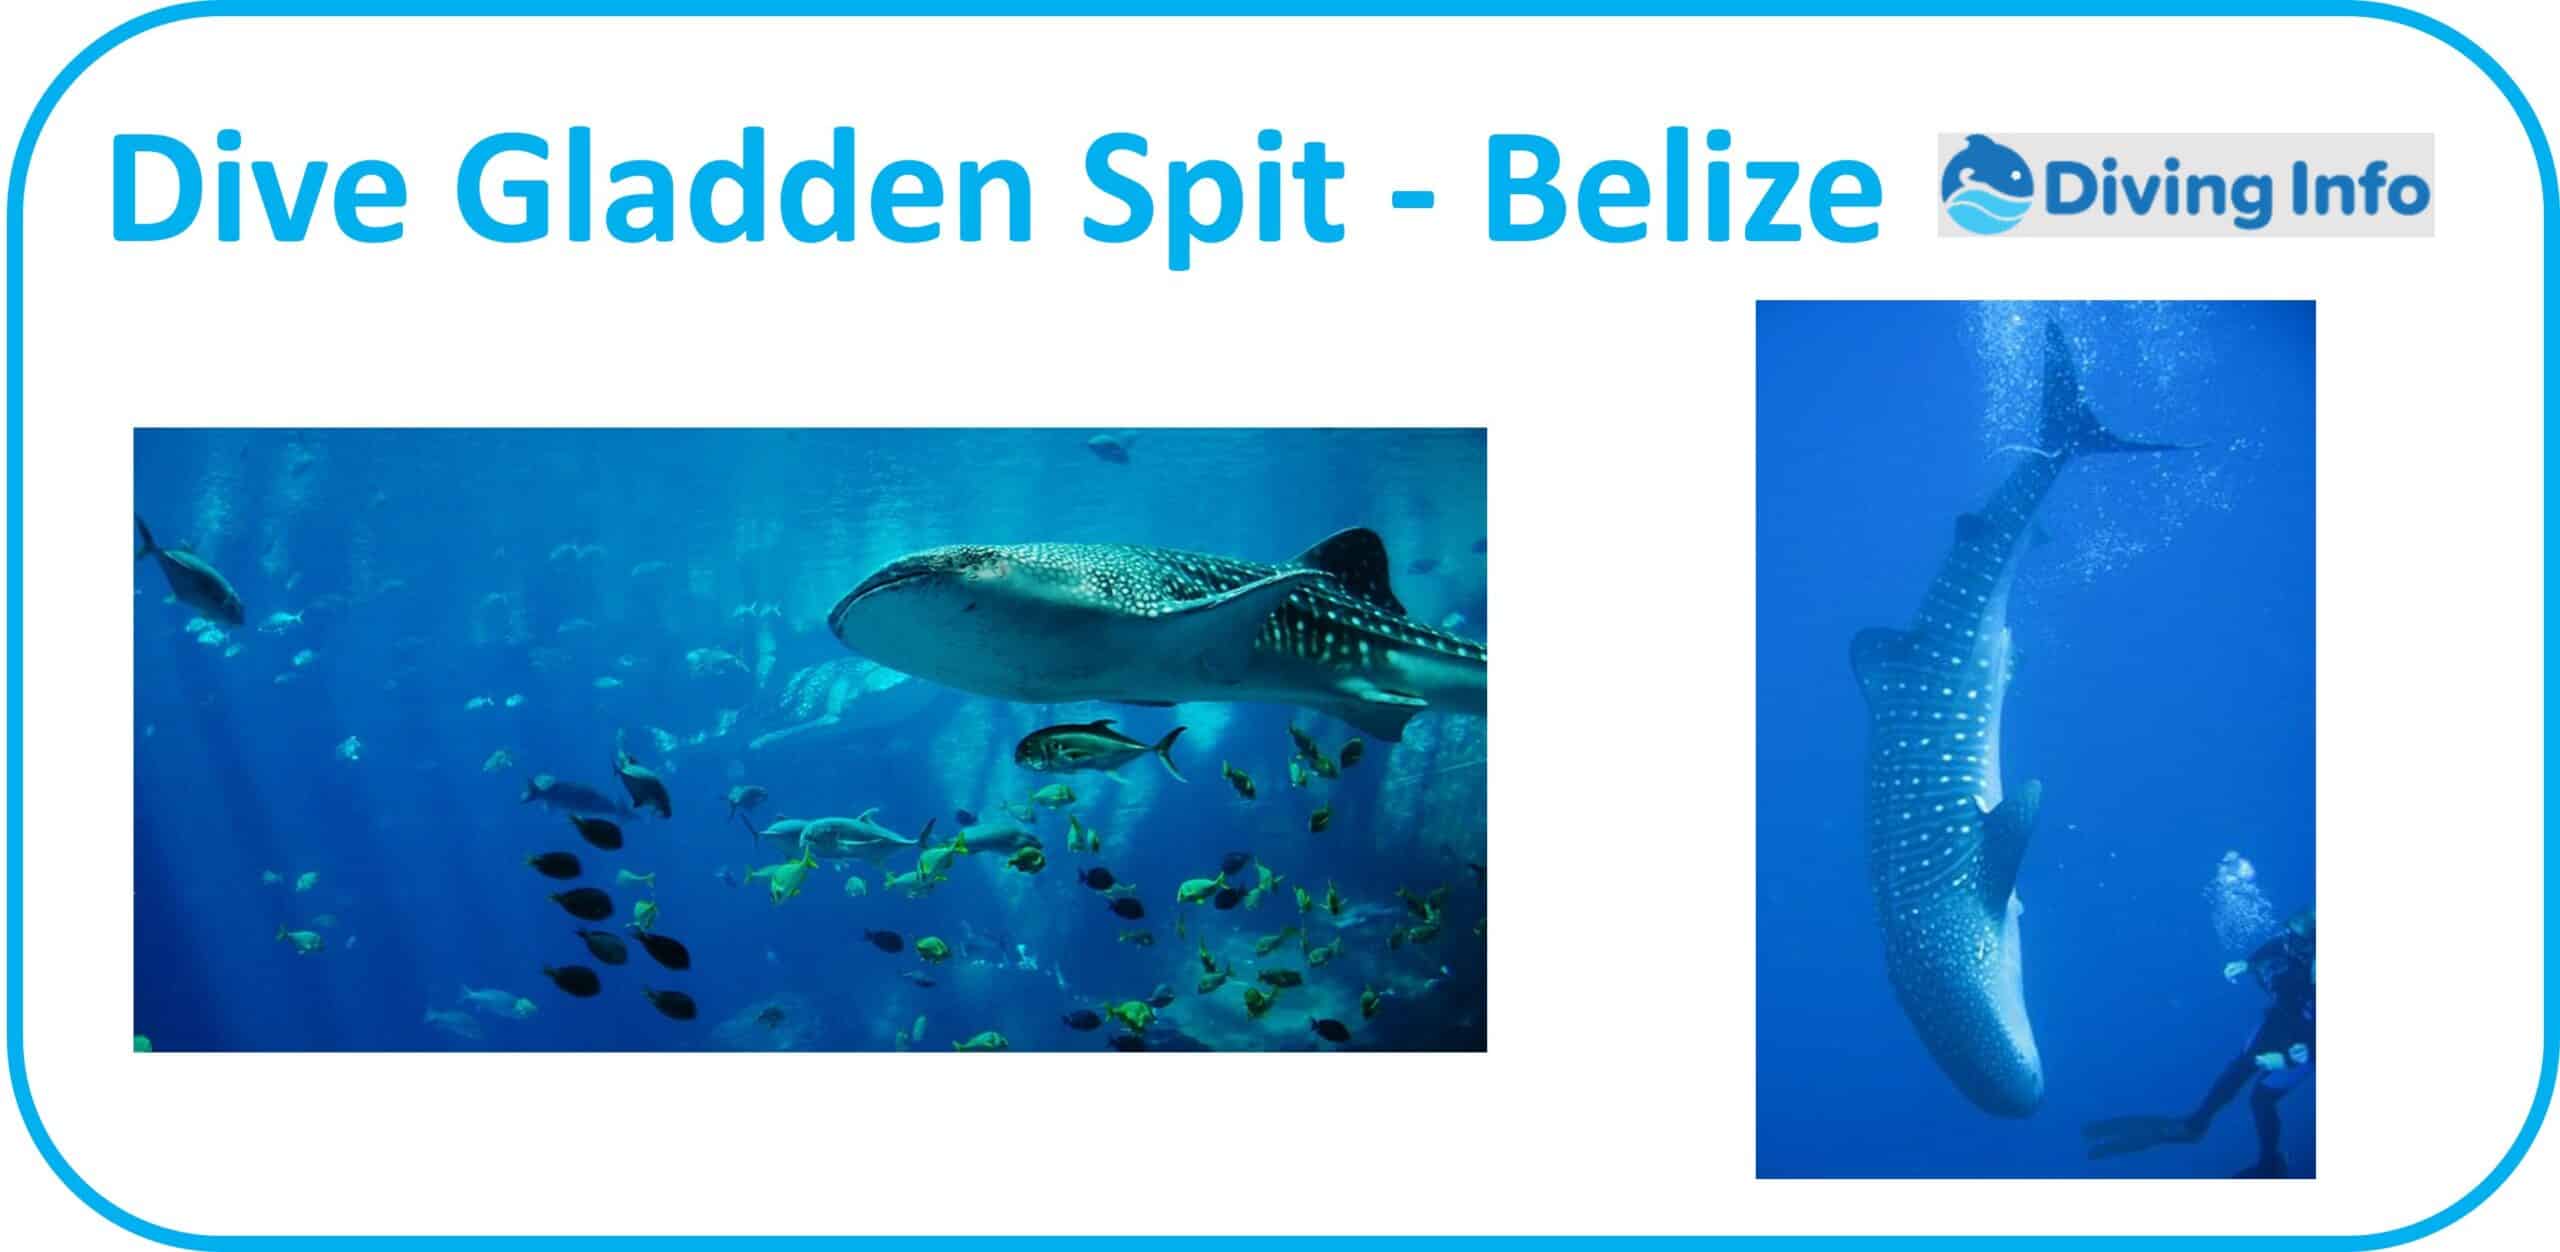 Dive Gladden Spit - Belize